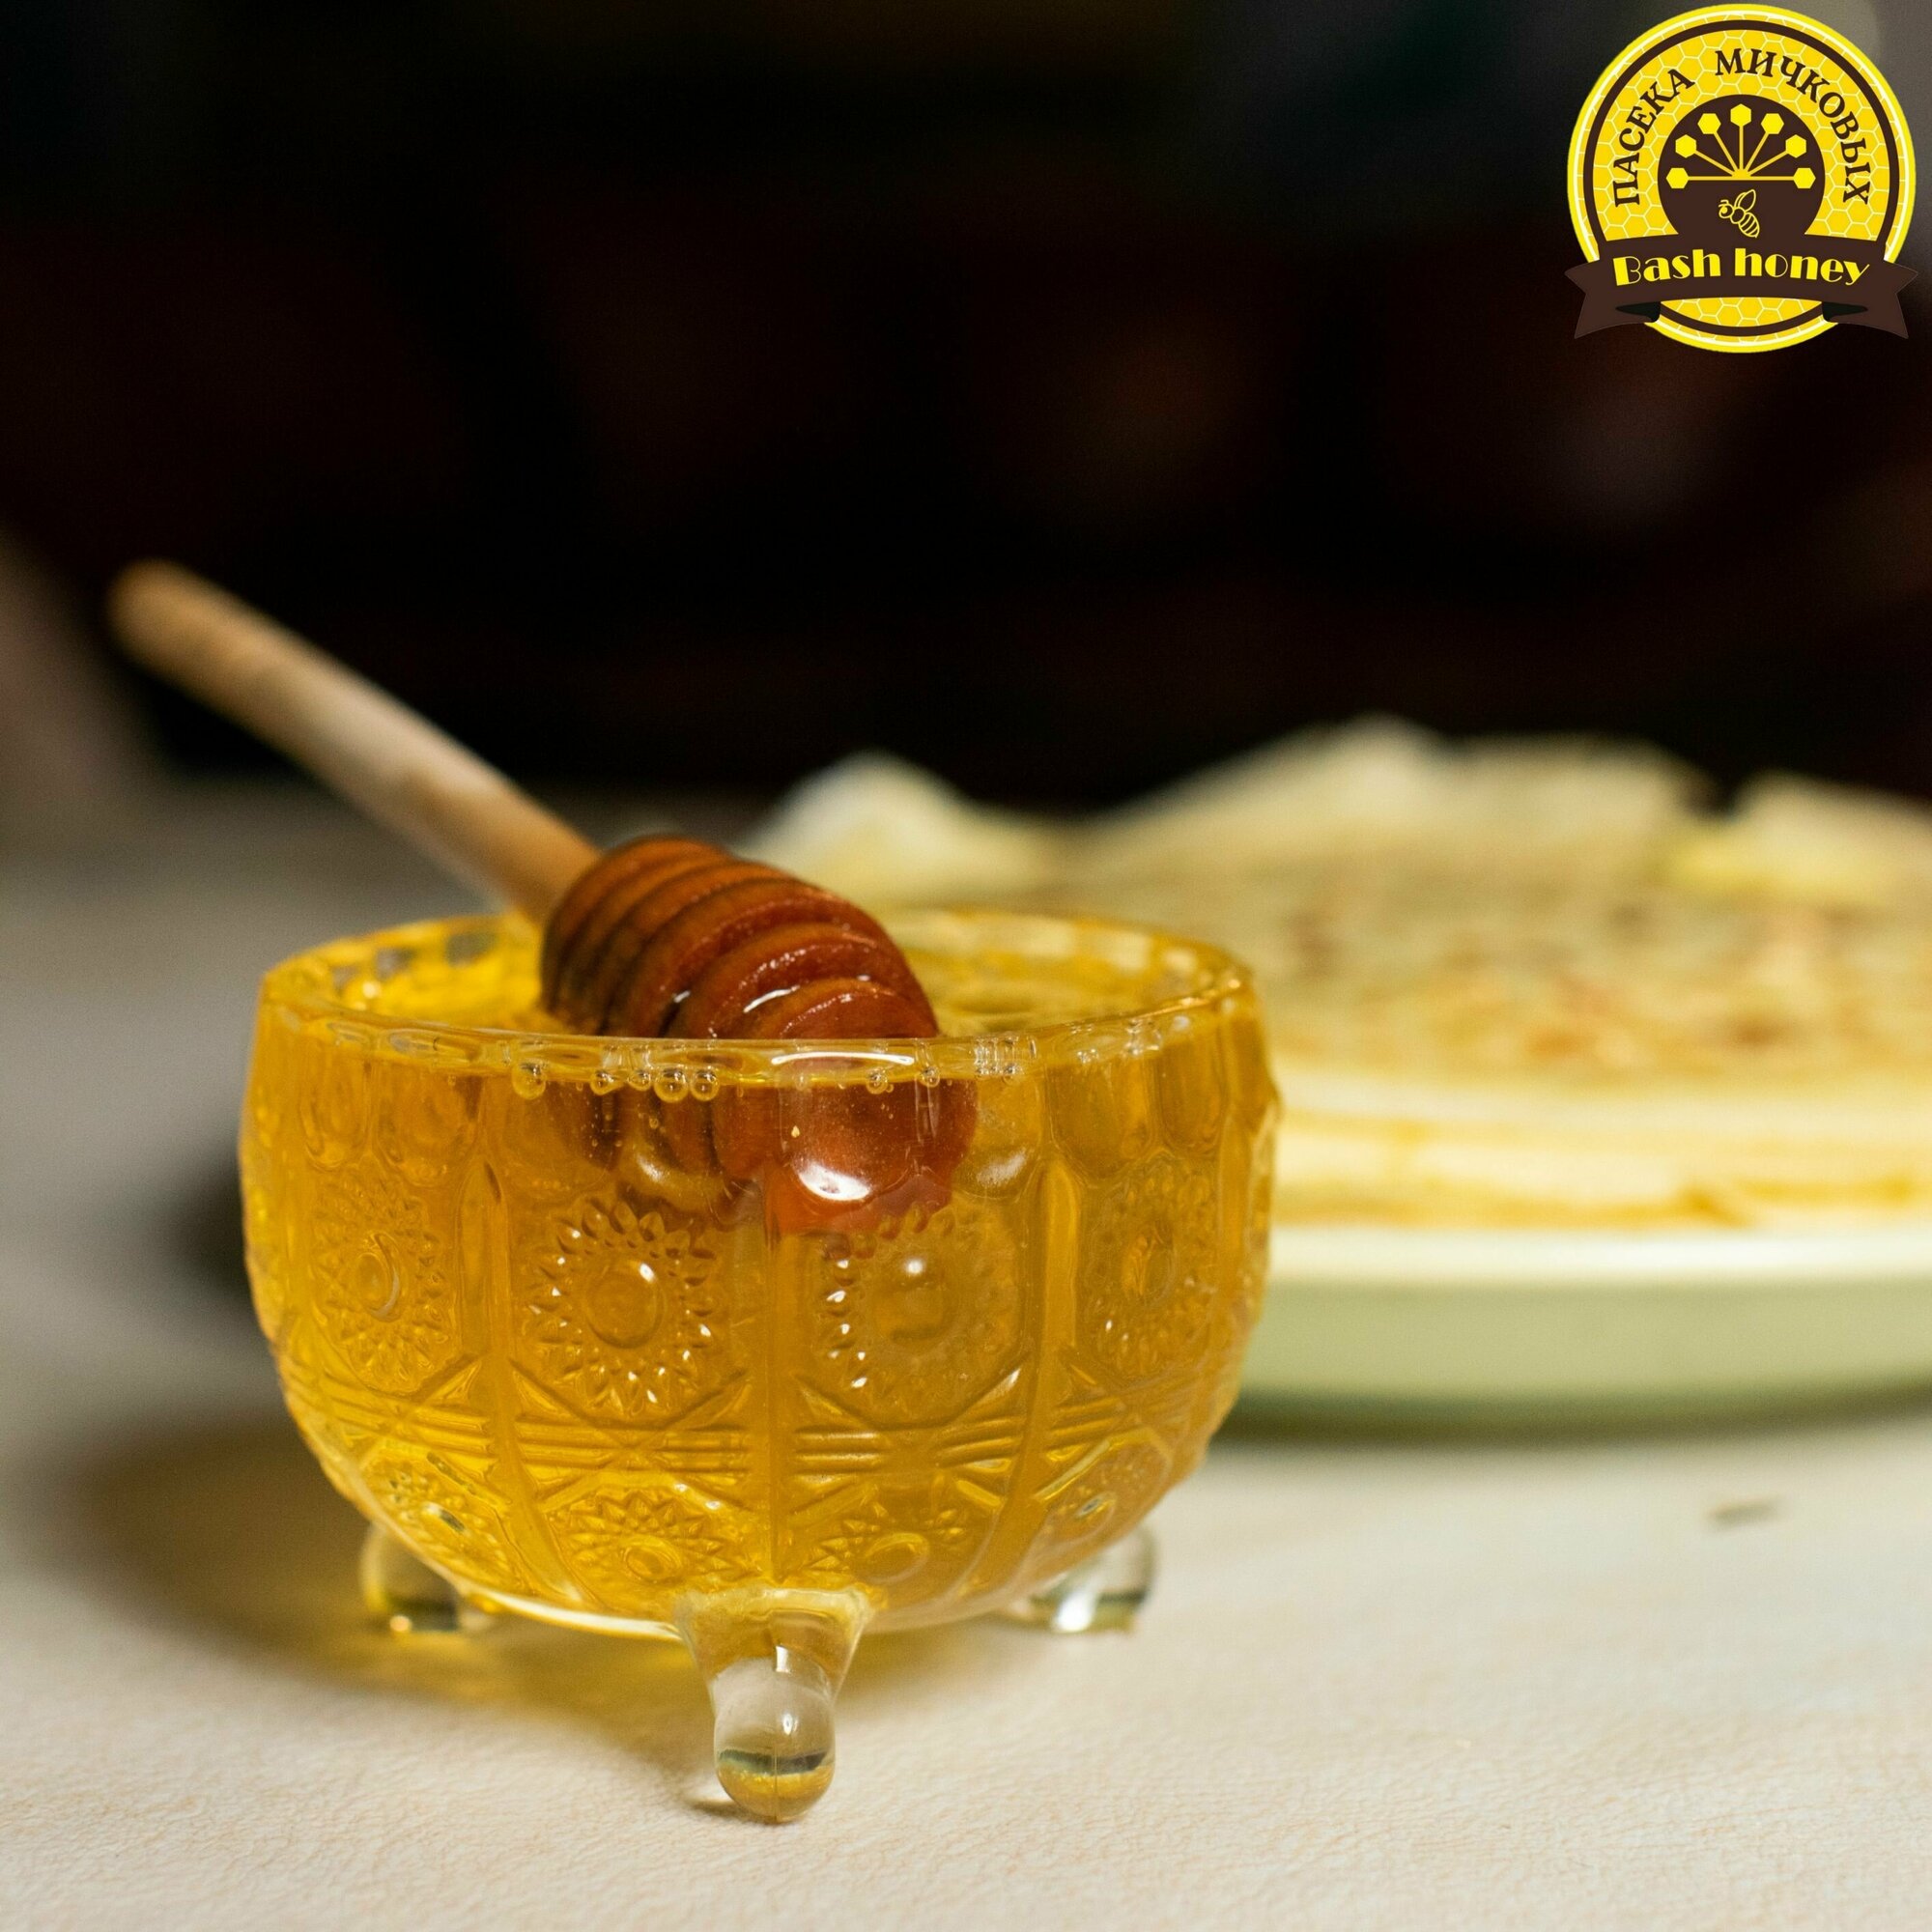 мед башкирский липовый вкусный натуральный лечебный кондитерский без сахара фасованный для вас - фотография № 11